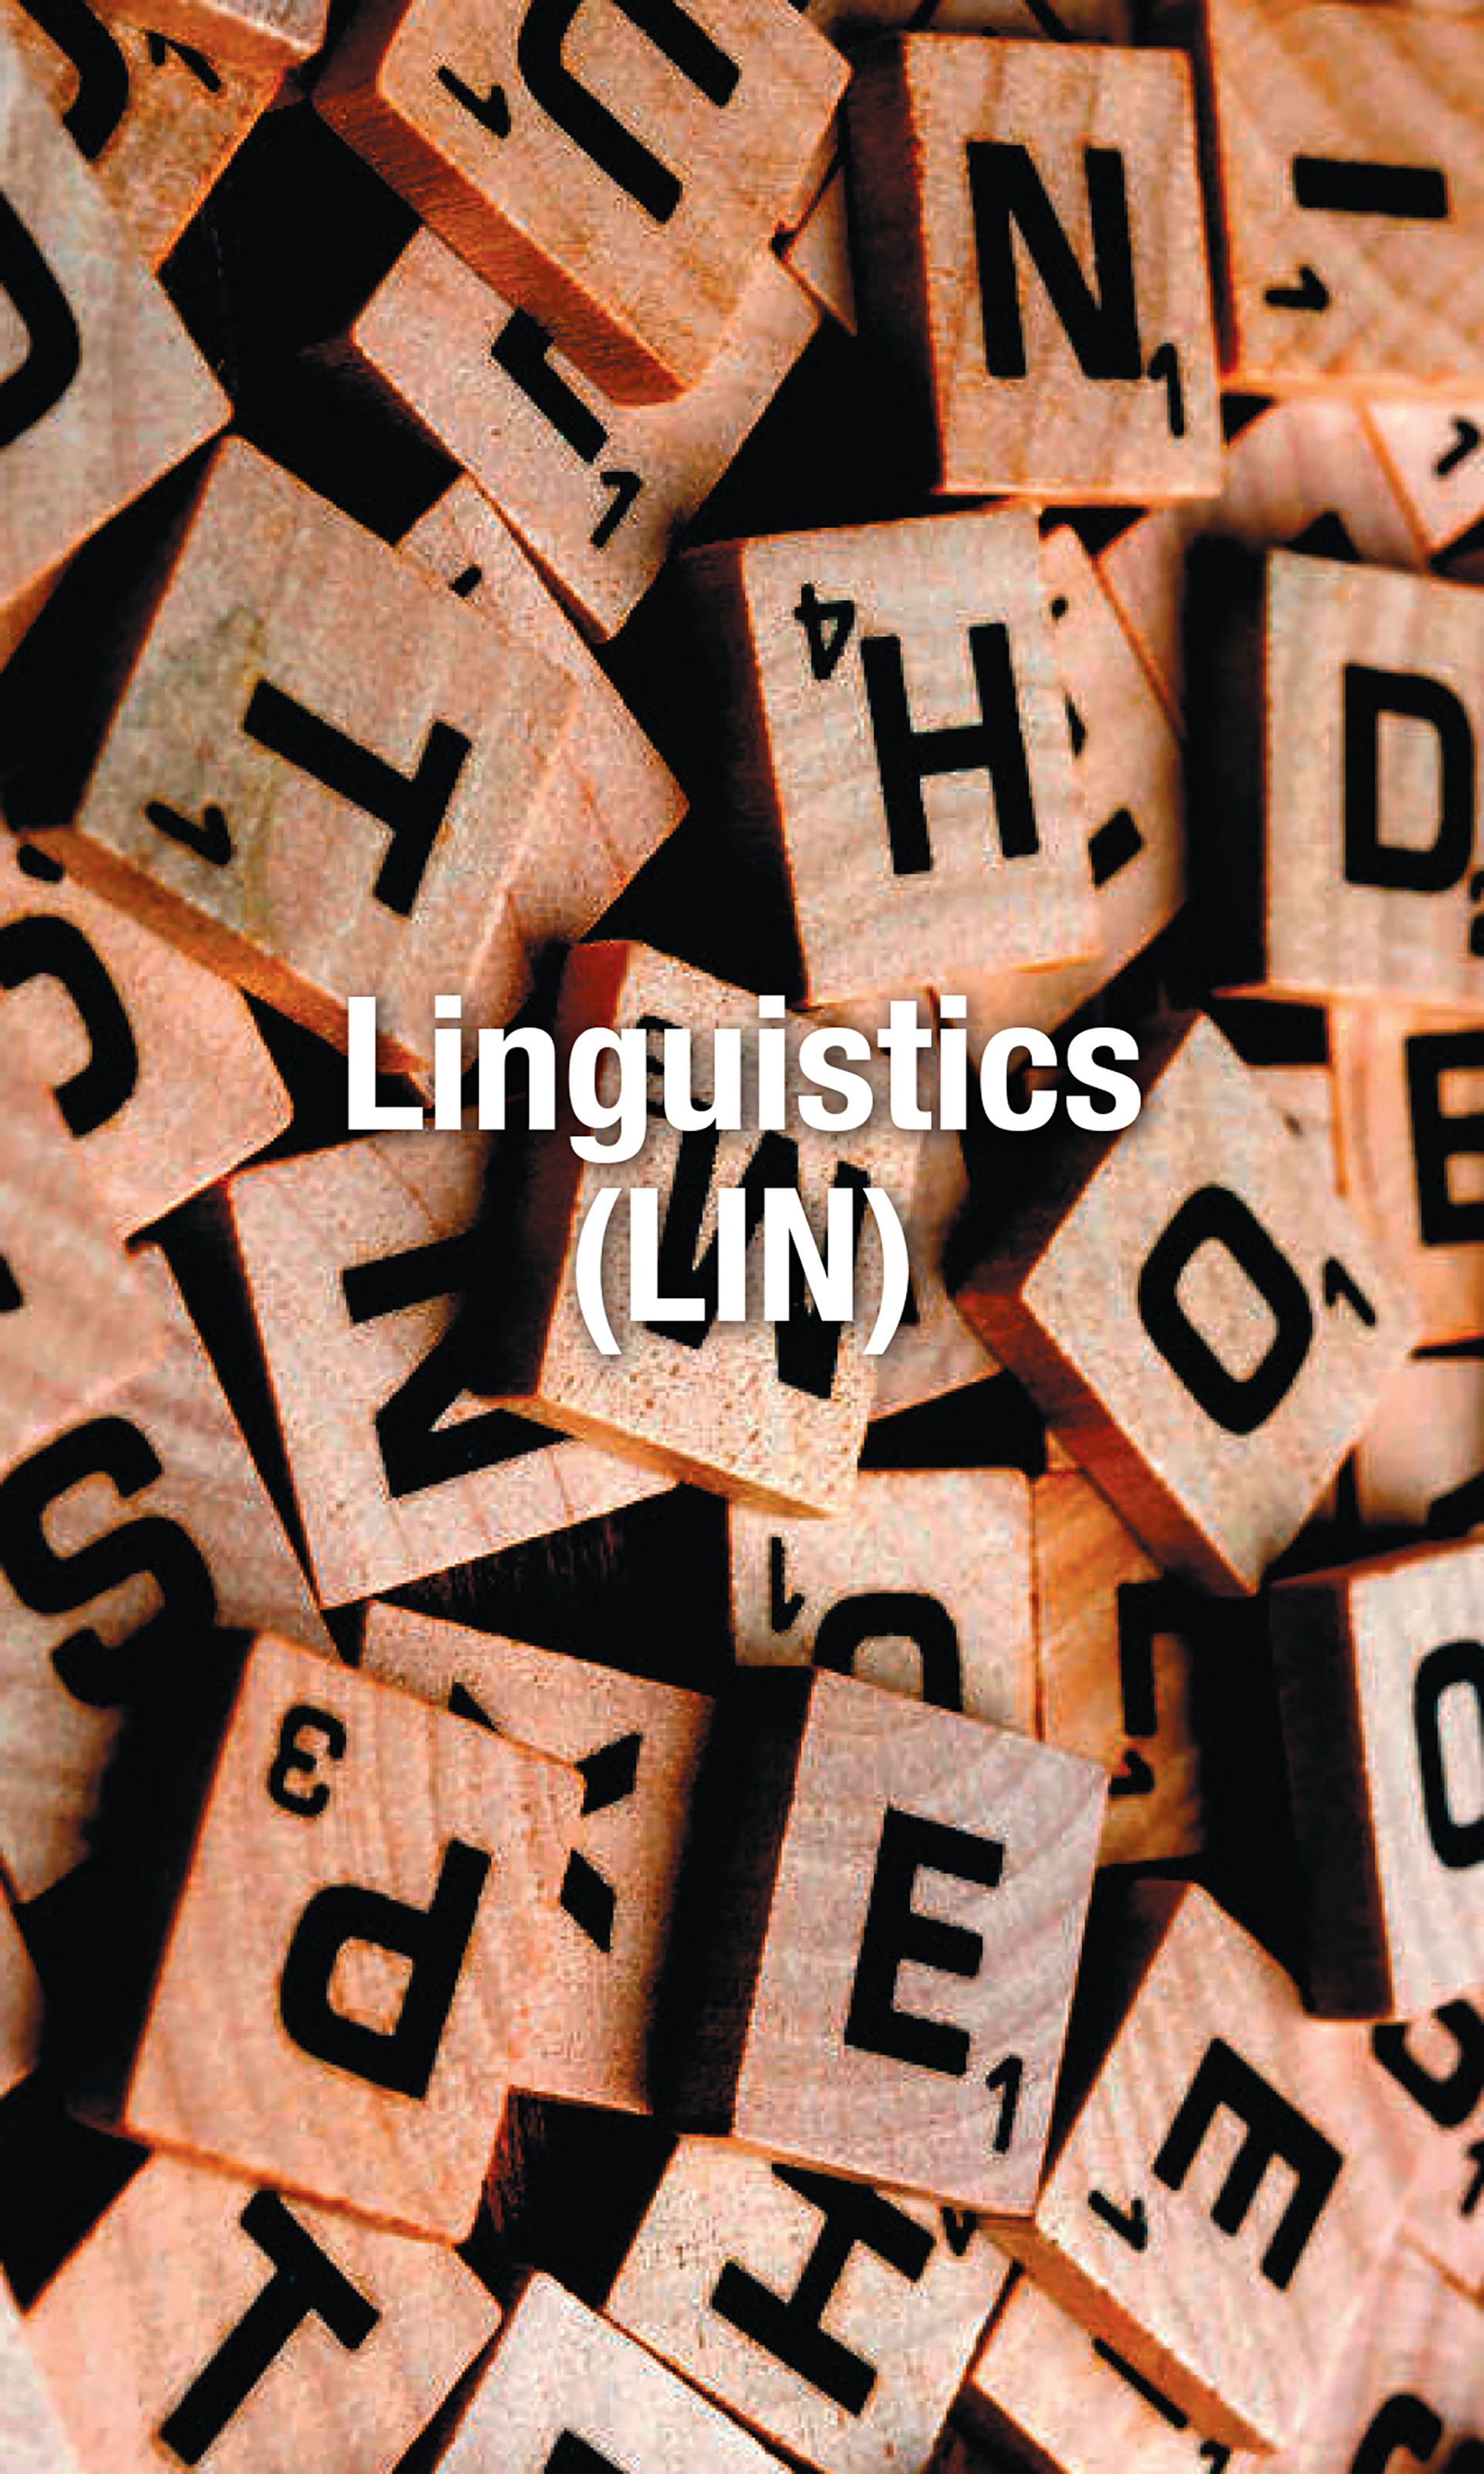 Linguistics(lin)